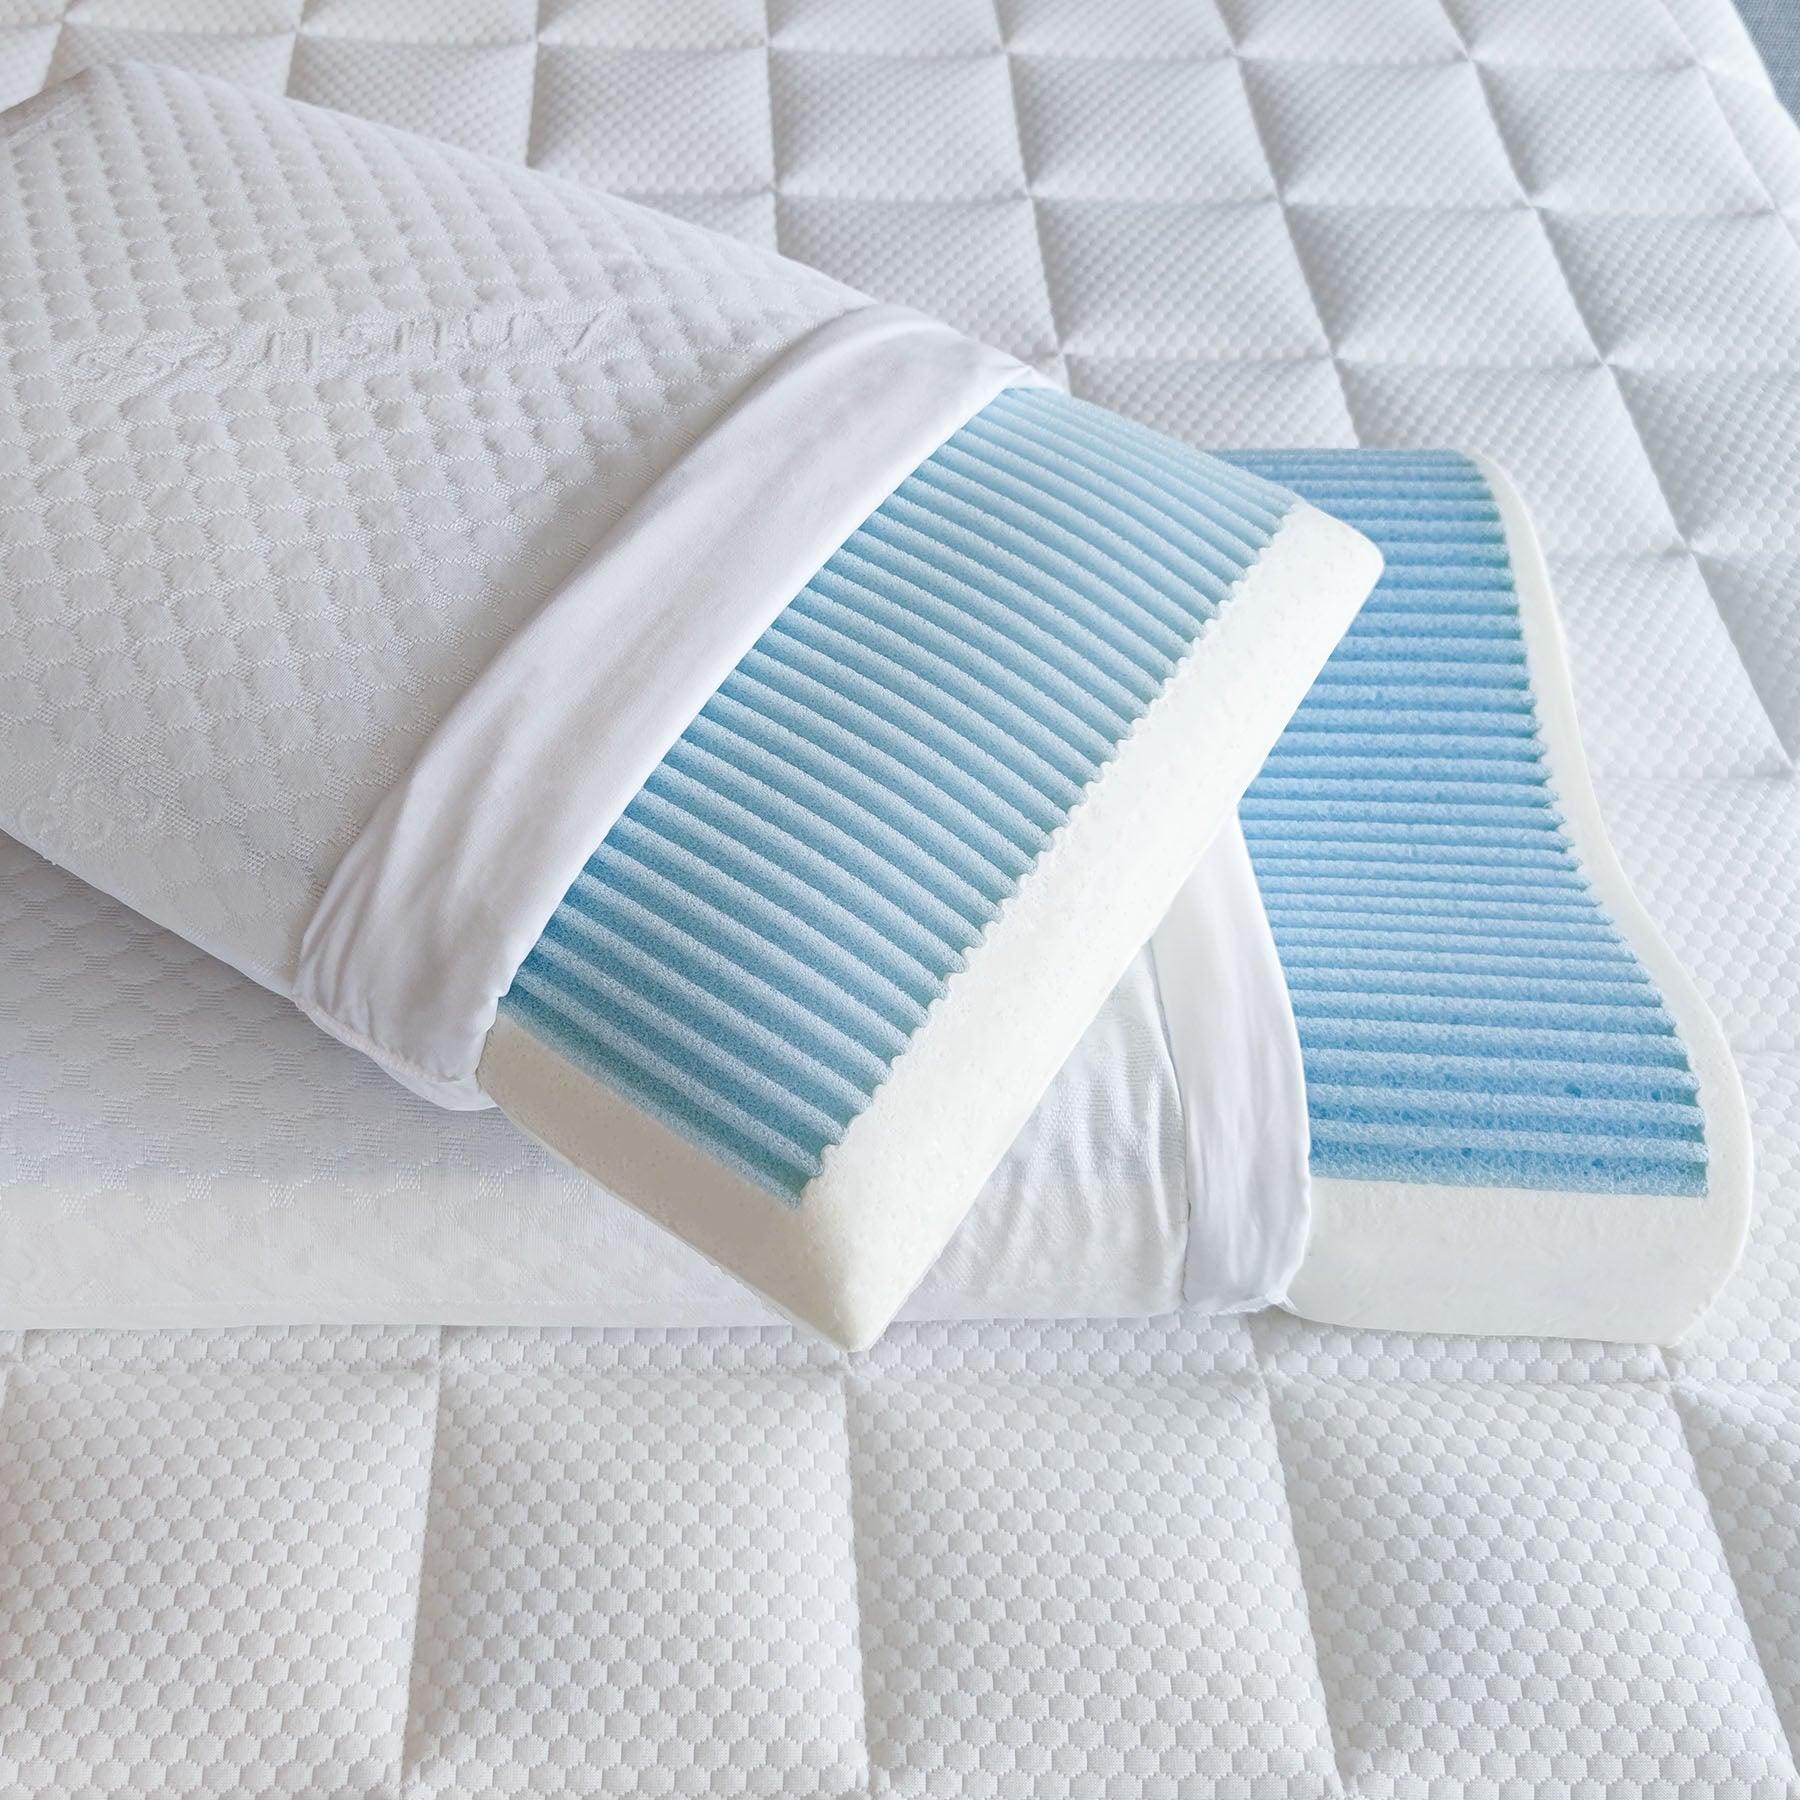 Cuscino LIGNANO Memory Foam e Watergel® traspirante - Comfort e freschezza per un riposo ottimale su Beliamo.com